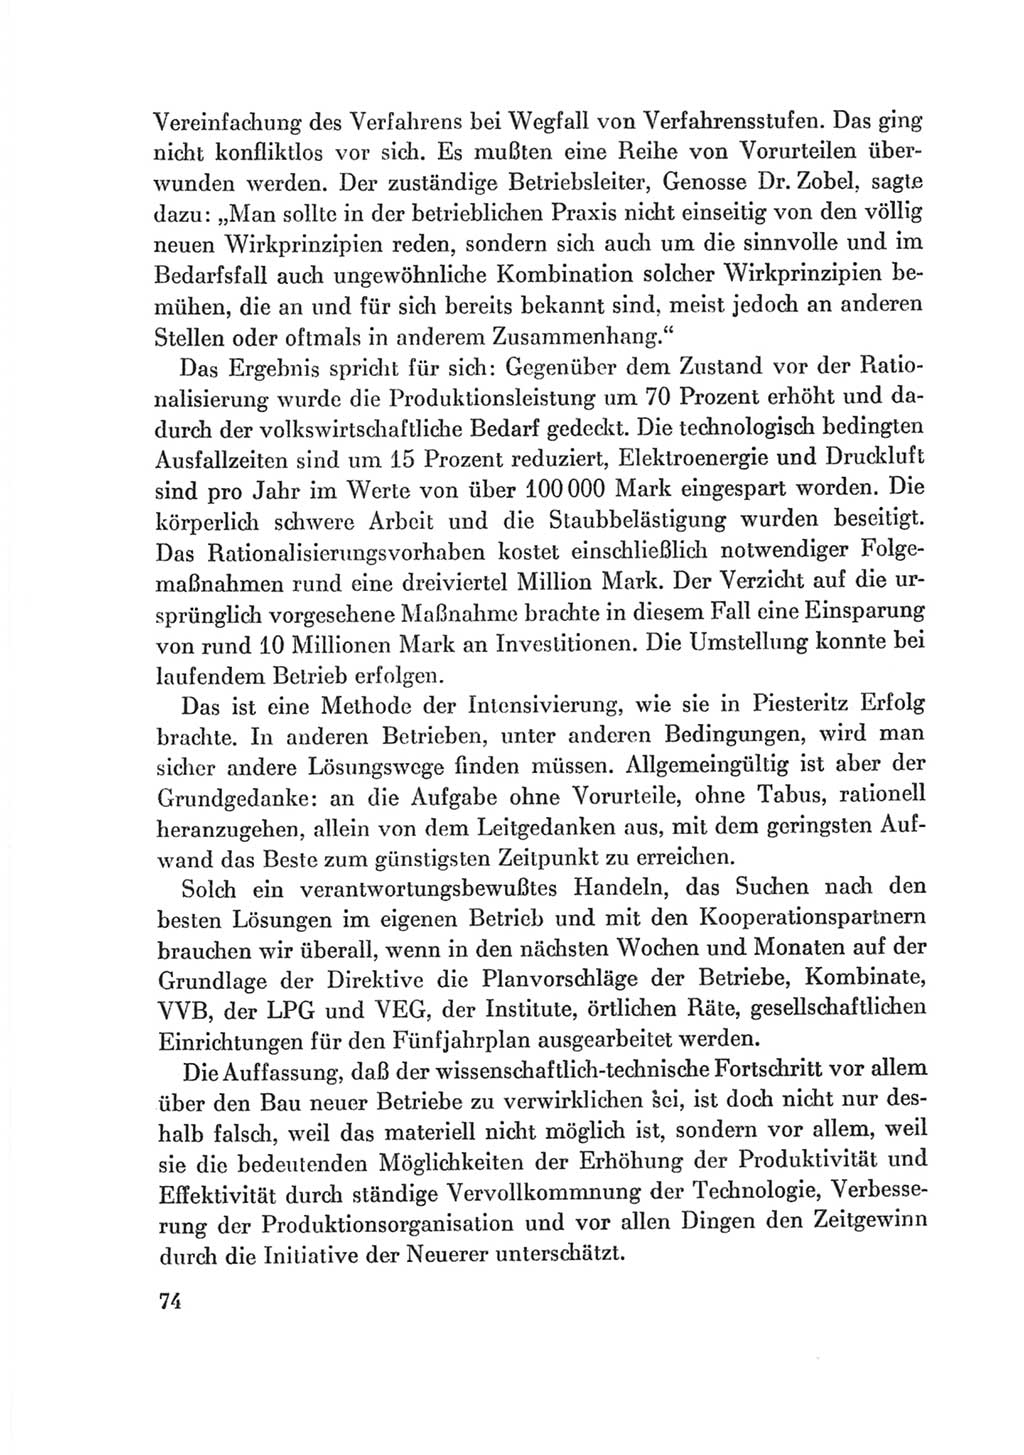 Protokoll der Verhandlungen des Ⅷ. Parteitages der Sozialistischen Einheitspartei Deutschlands (SED) [Deutsche Demokratische Republik (DDR)] 1971, Band 2, Seite 74 (Prot. Verh. Ⅷ. PT SED DDR 1971, Bd. 2, S. 74)